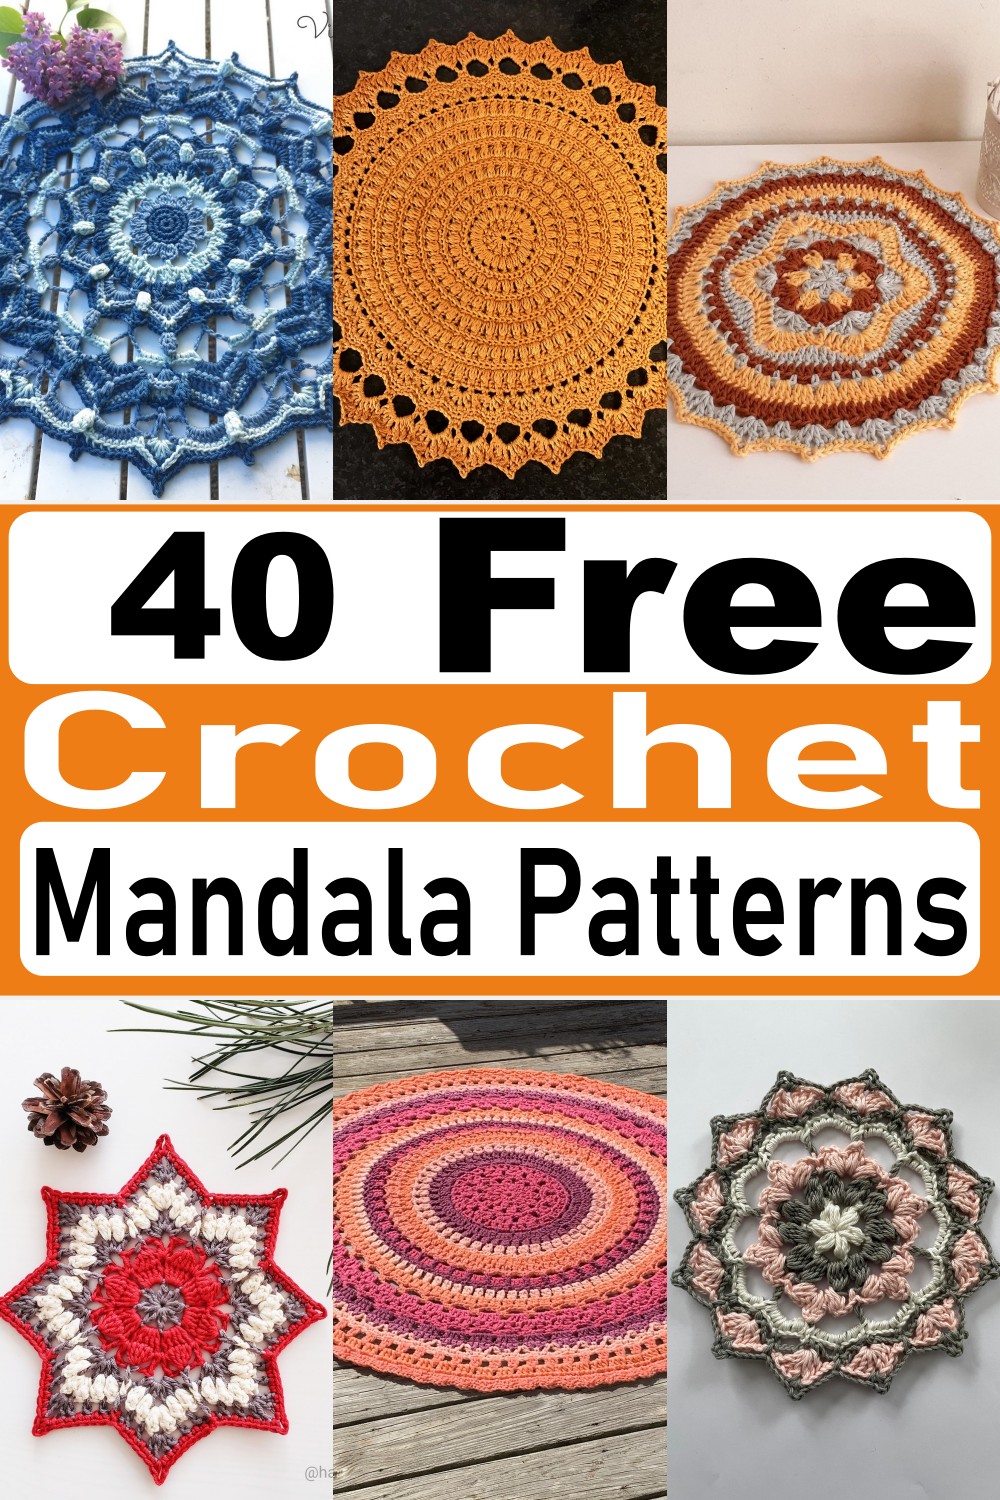 40 Free Crochet Mandala Patterns